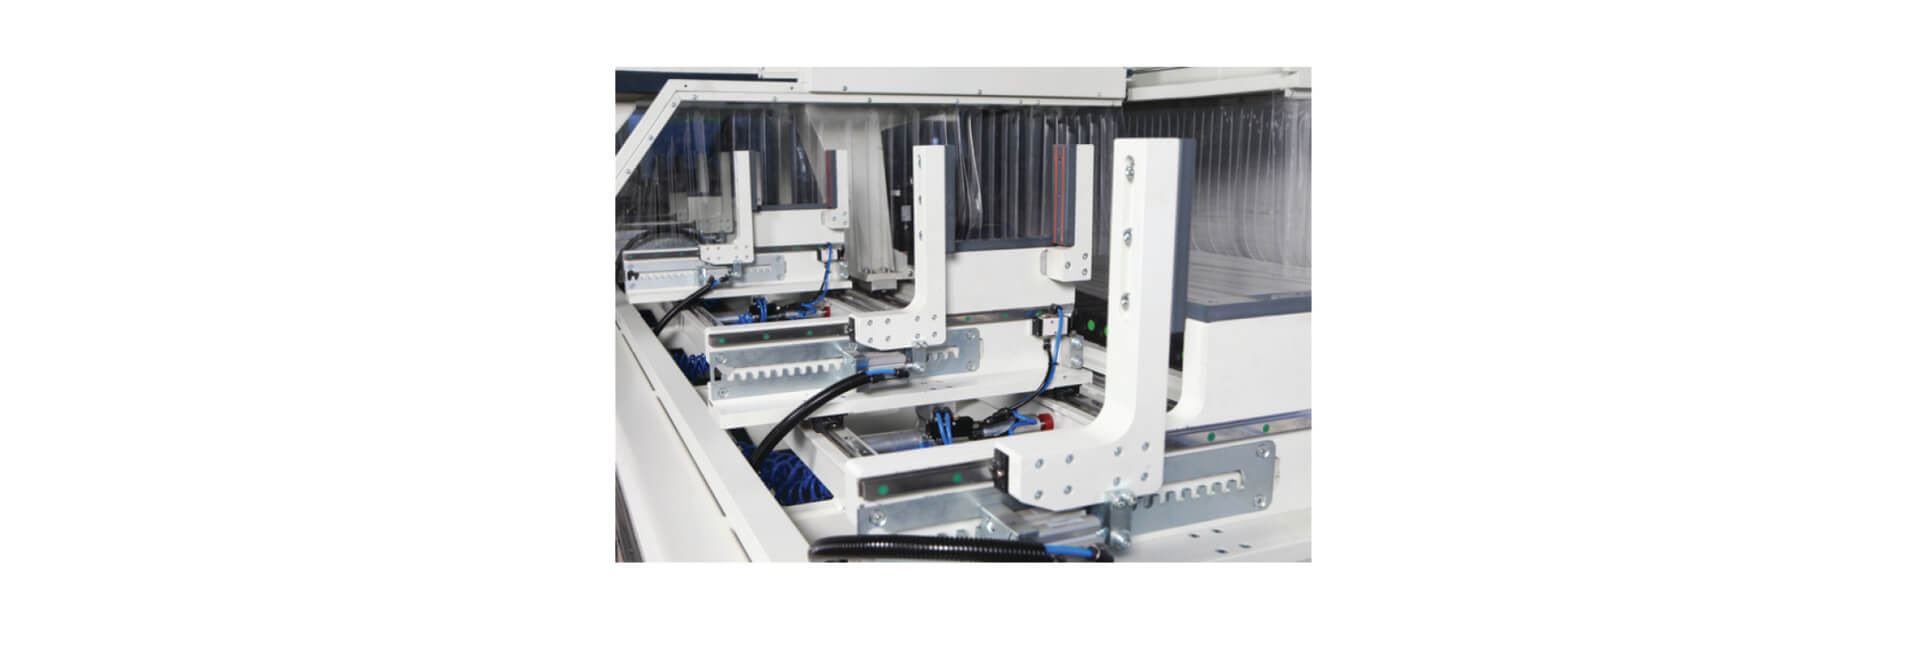 INO XP 7000 Centro de Mecanizado de Perfiles CNC de 3 Ejes